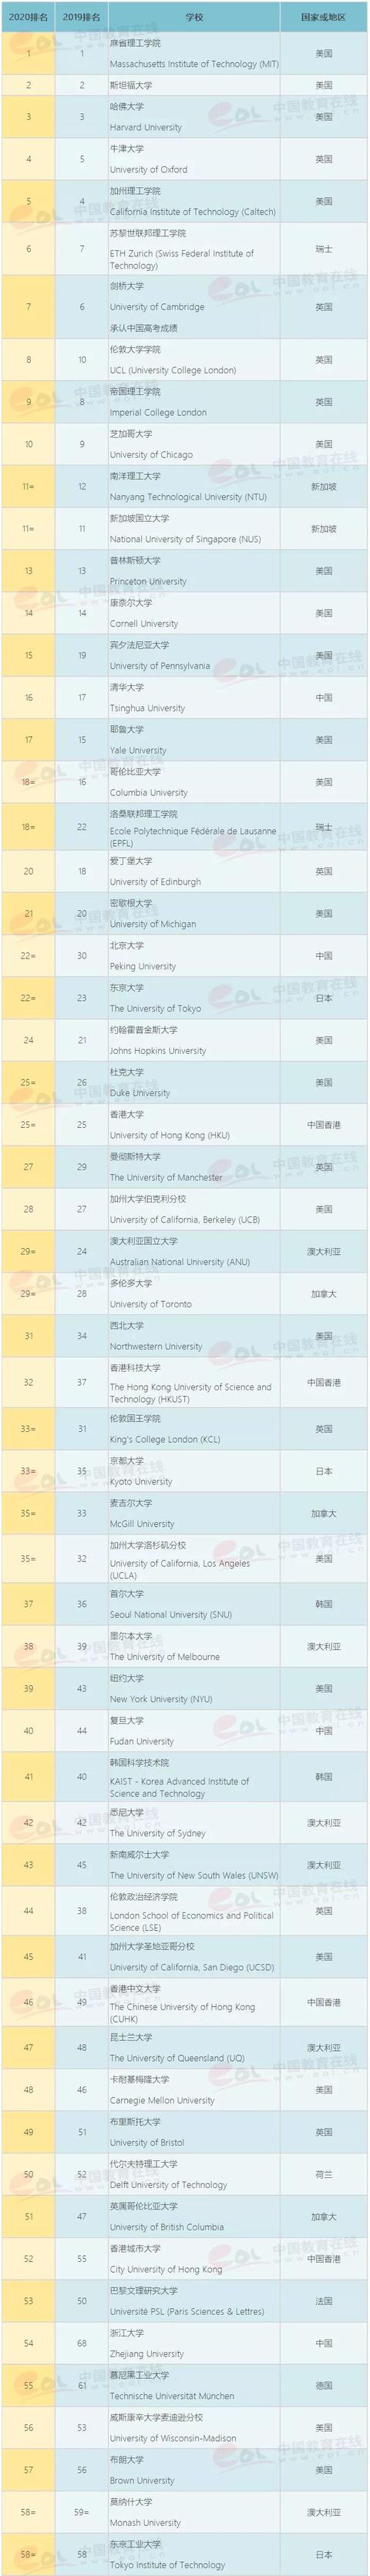 最新！2020QS世界大学排名公布：中国10所高校学术实力比肩美国